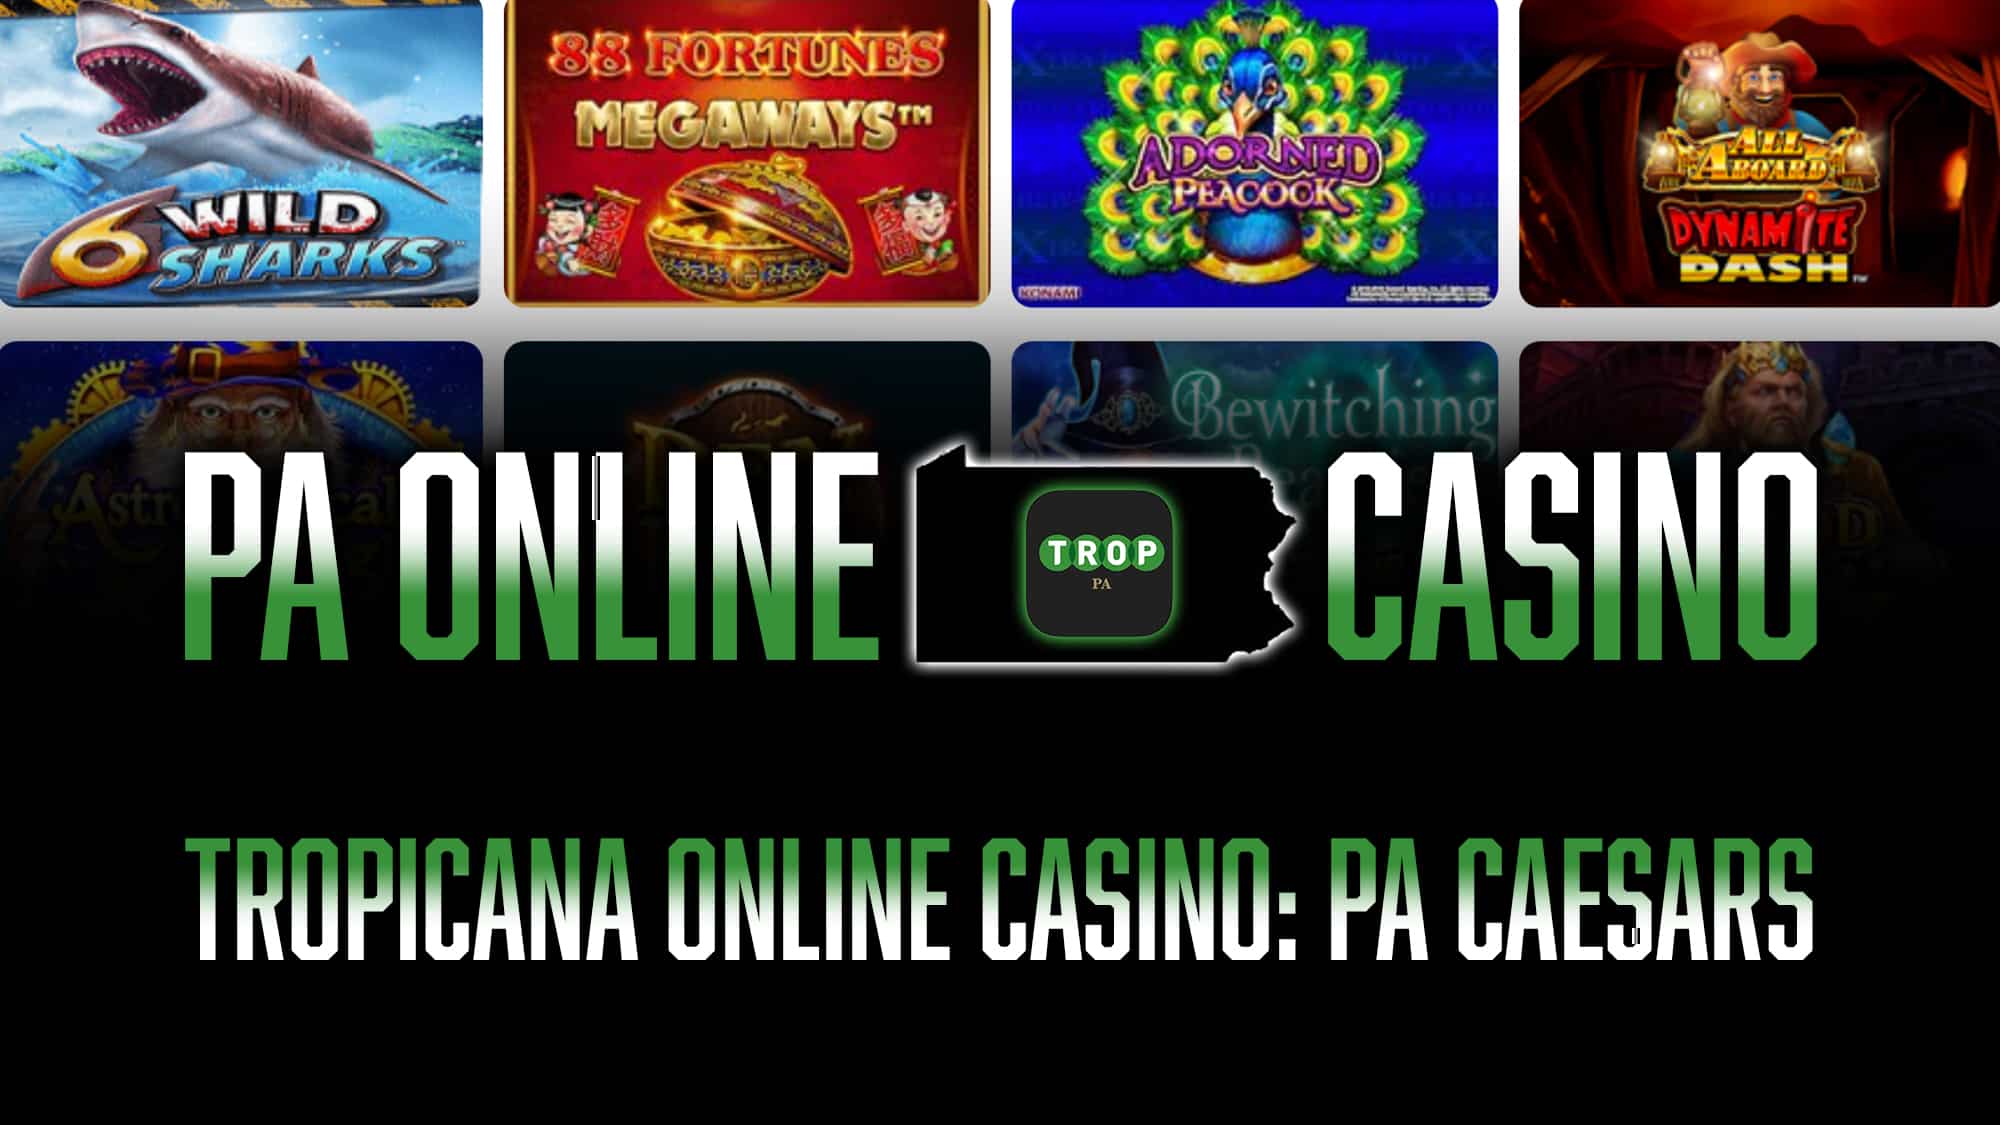 Tropicana Online Casino, PA Caesars Casino